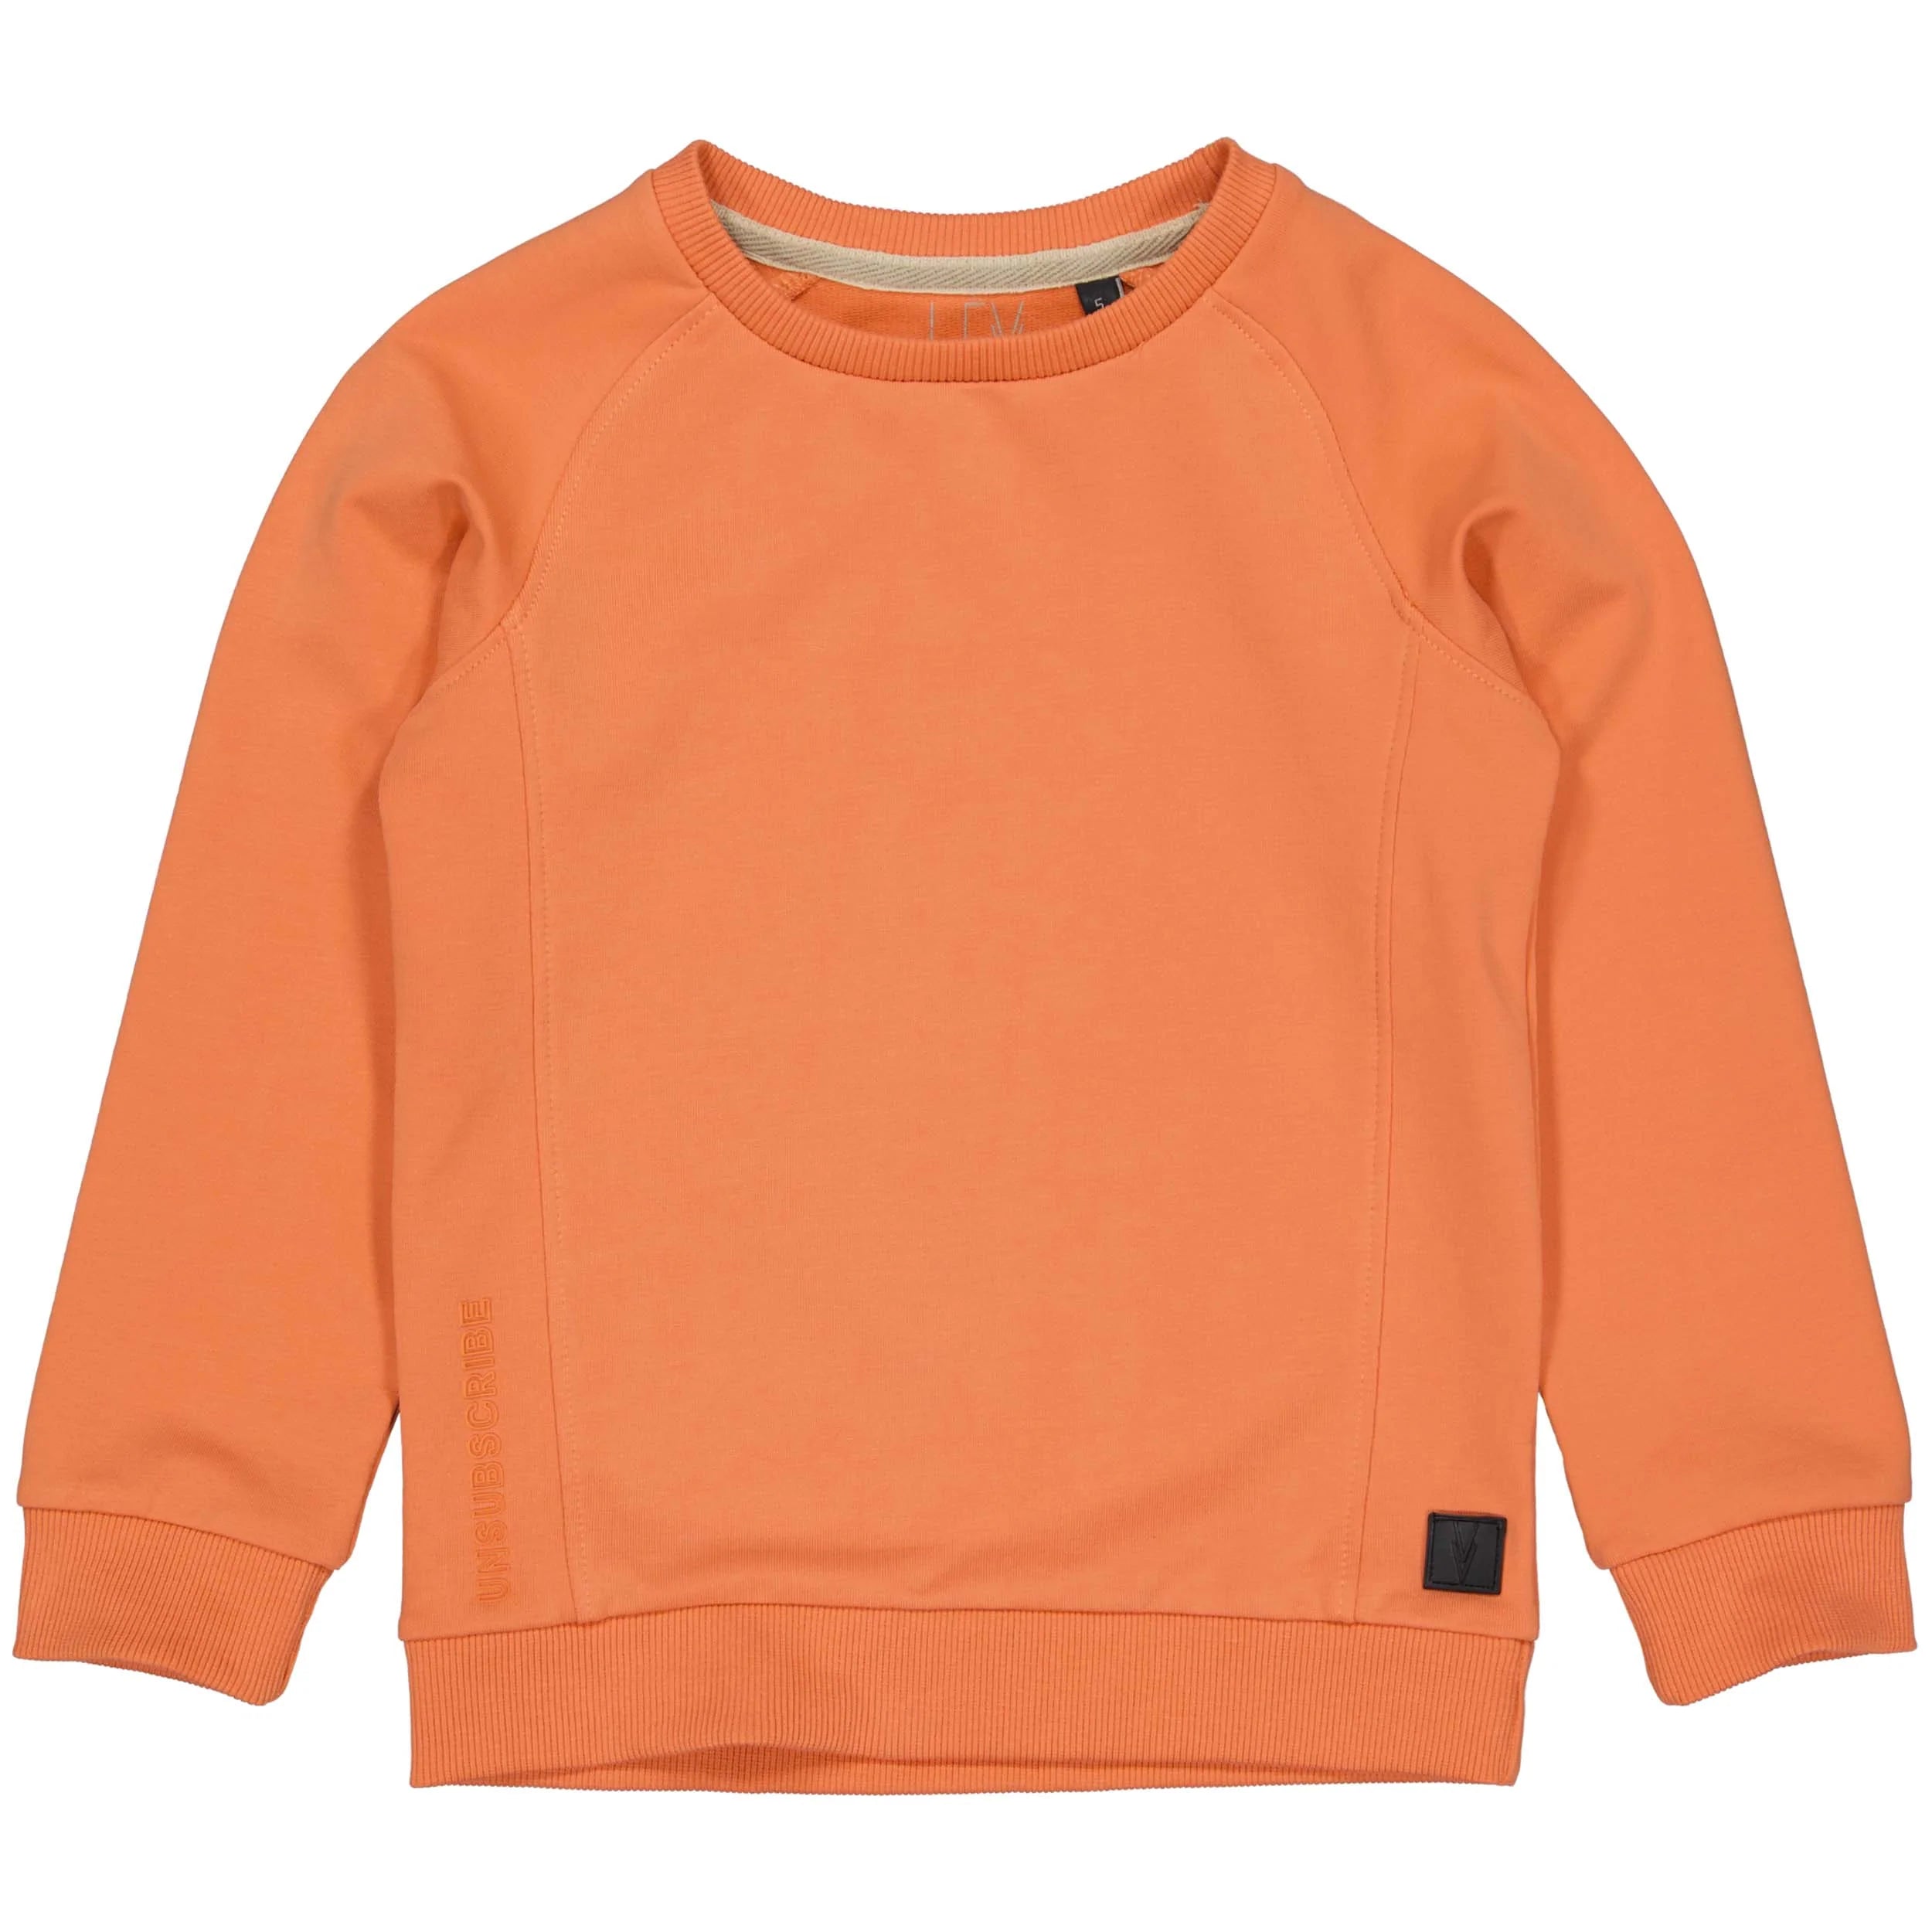 Jongens Sweater LELMAR van Levv in de kleur Orange Red in maat 128.